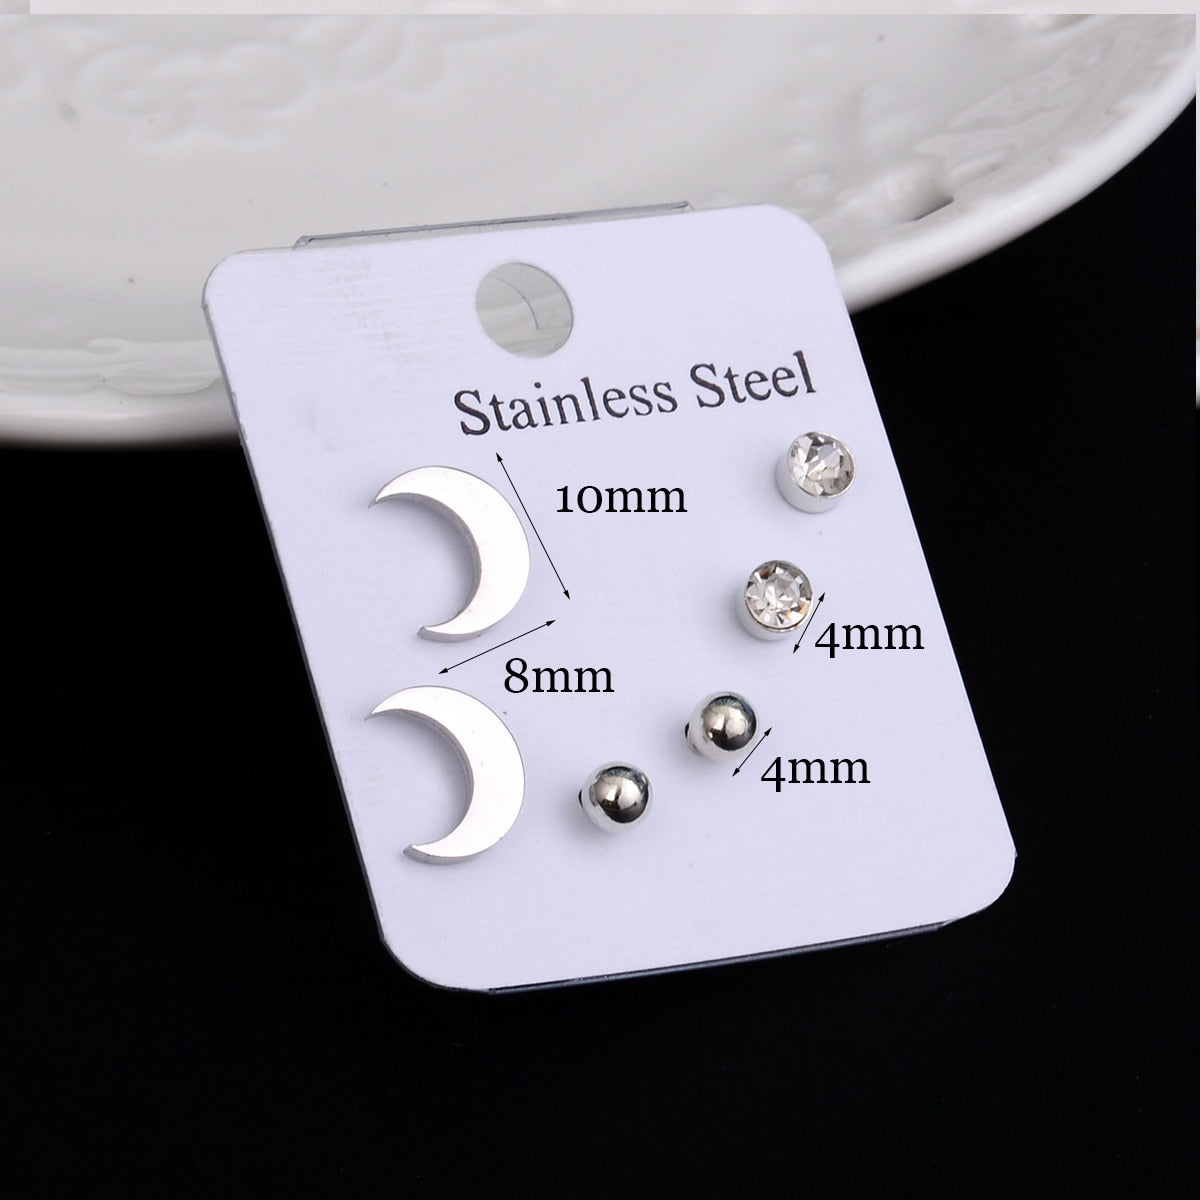 Stainless Steel Earrings Small Cute Butterfly Star Moon Heart Stud Earrings Set Punk Piercing Earing Women's Minimalist Jewelry